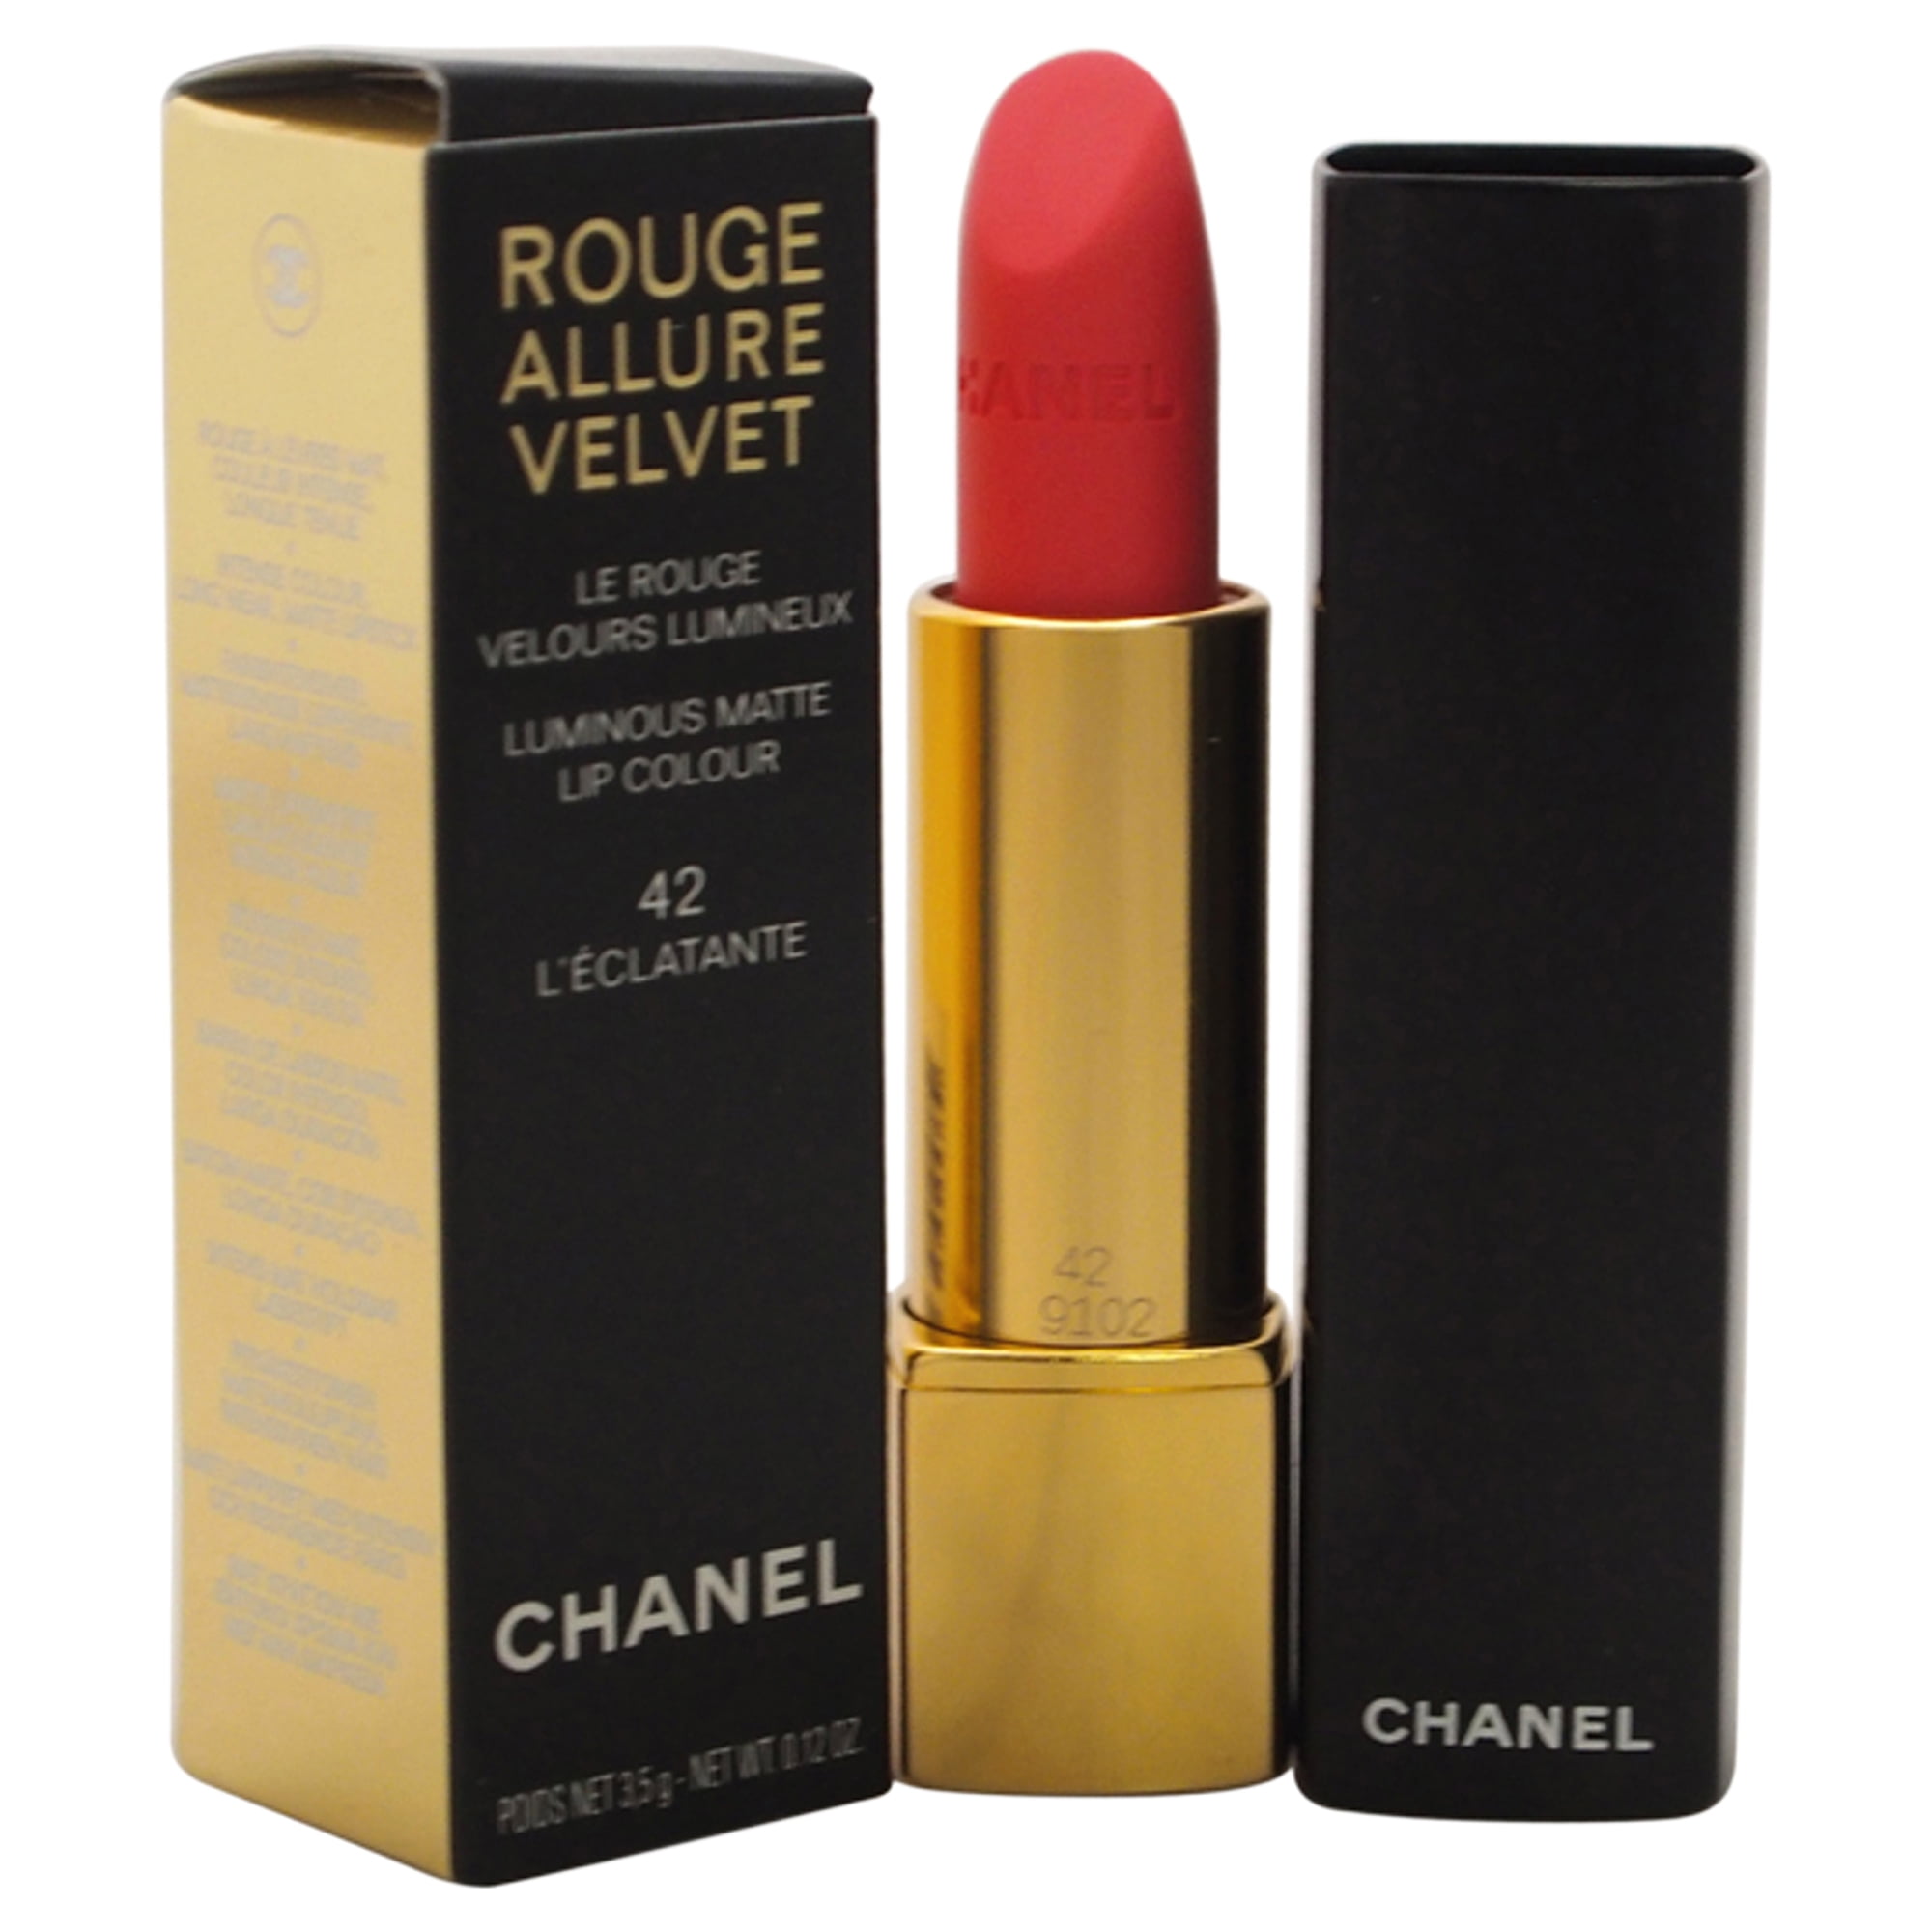 CHANEL - Rouge Allure Velvet Luminous Matte Lip Colour - # 42